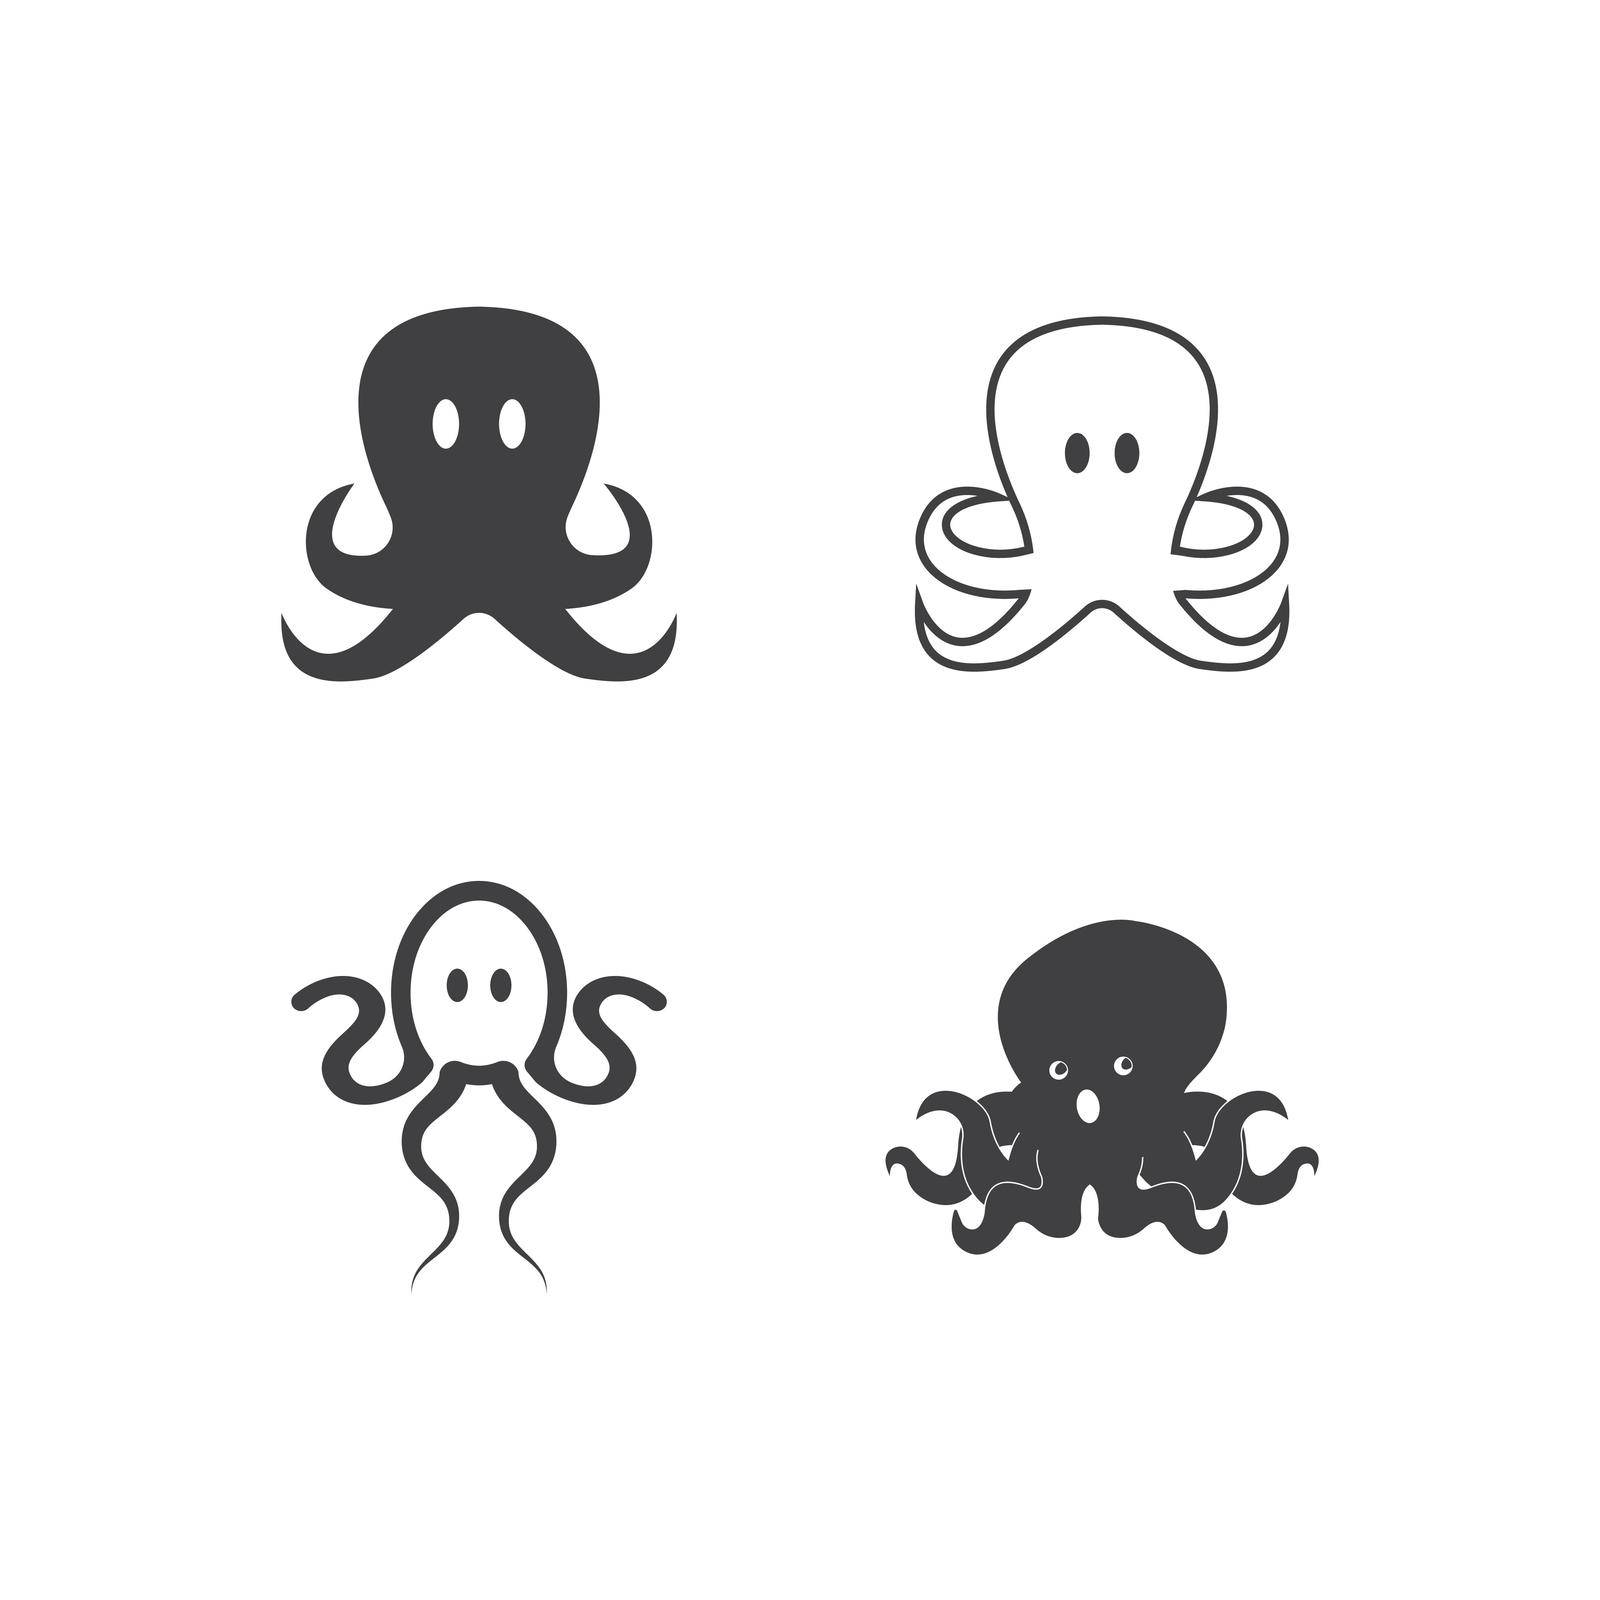 Octopus  Logo design vector template. Symbol concept icon.